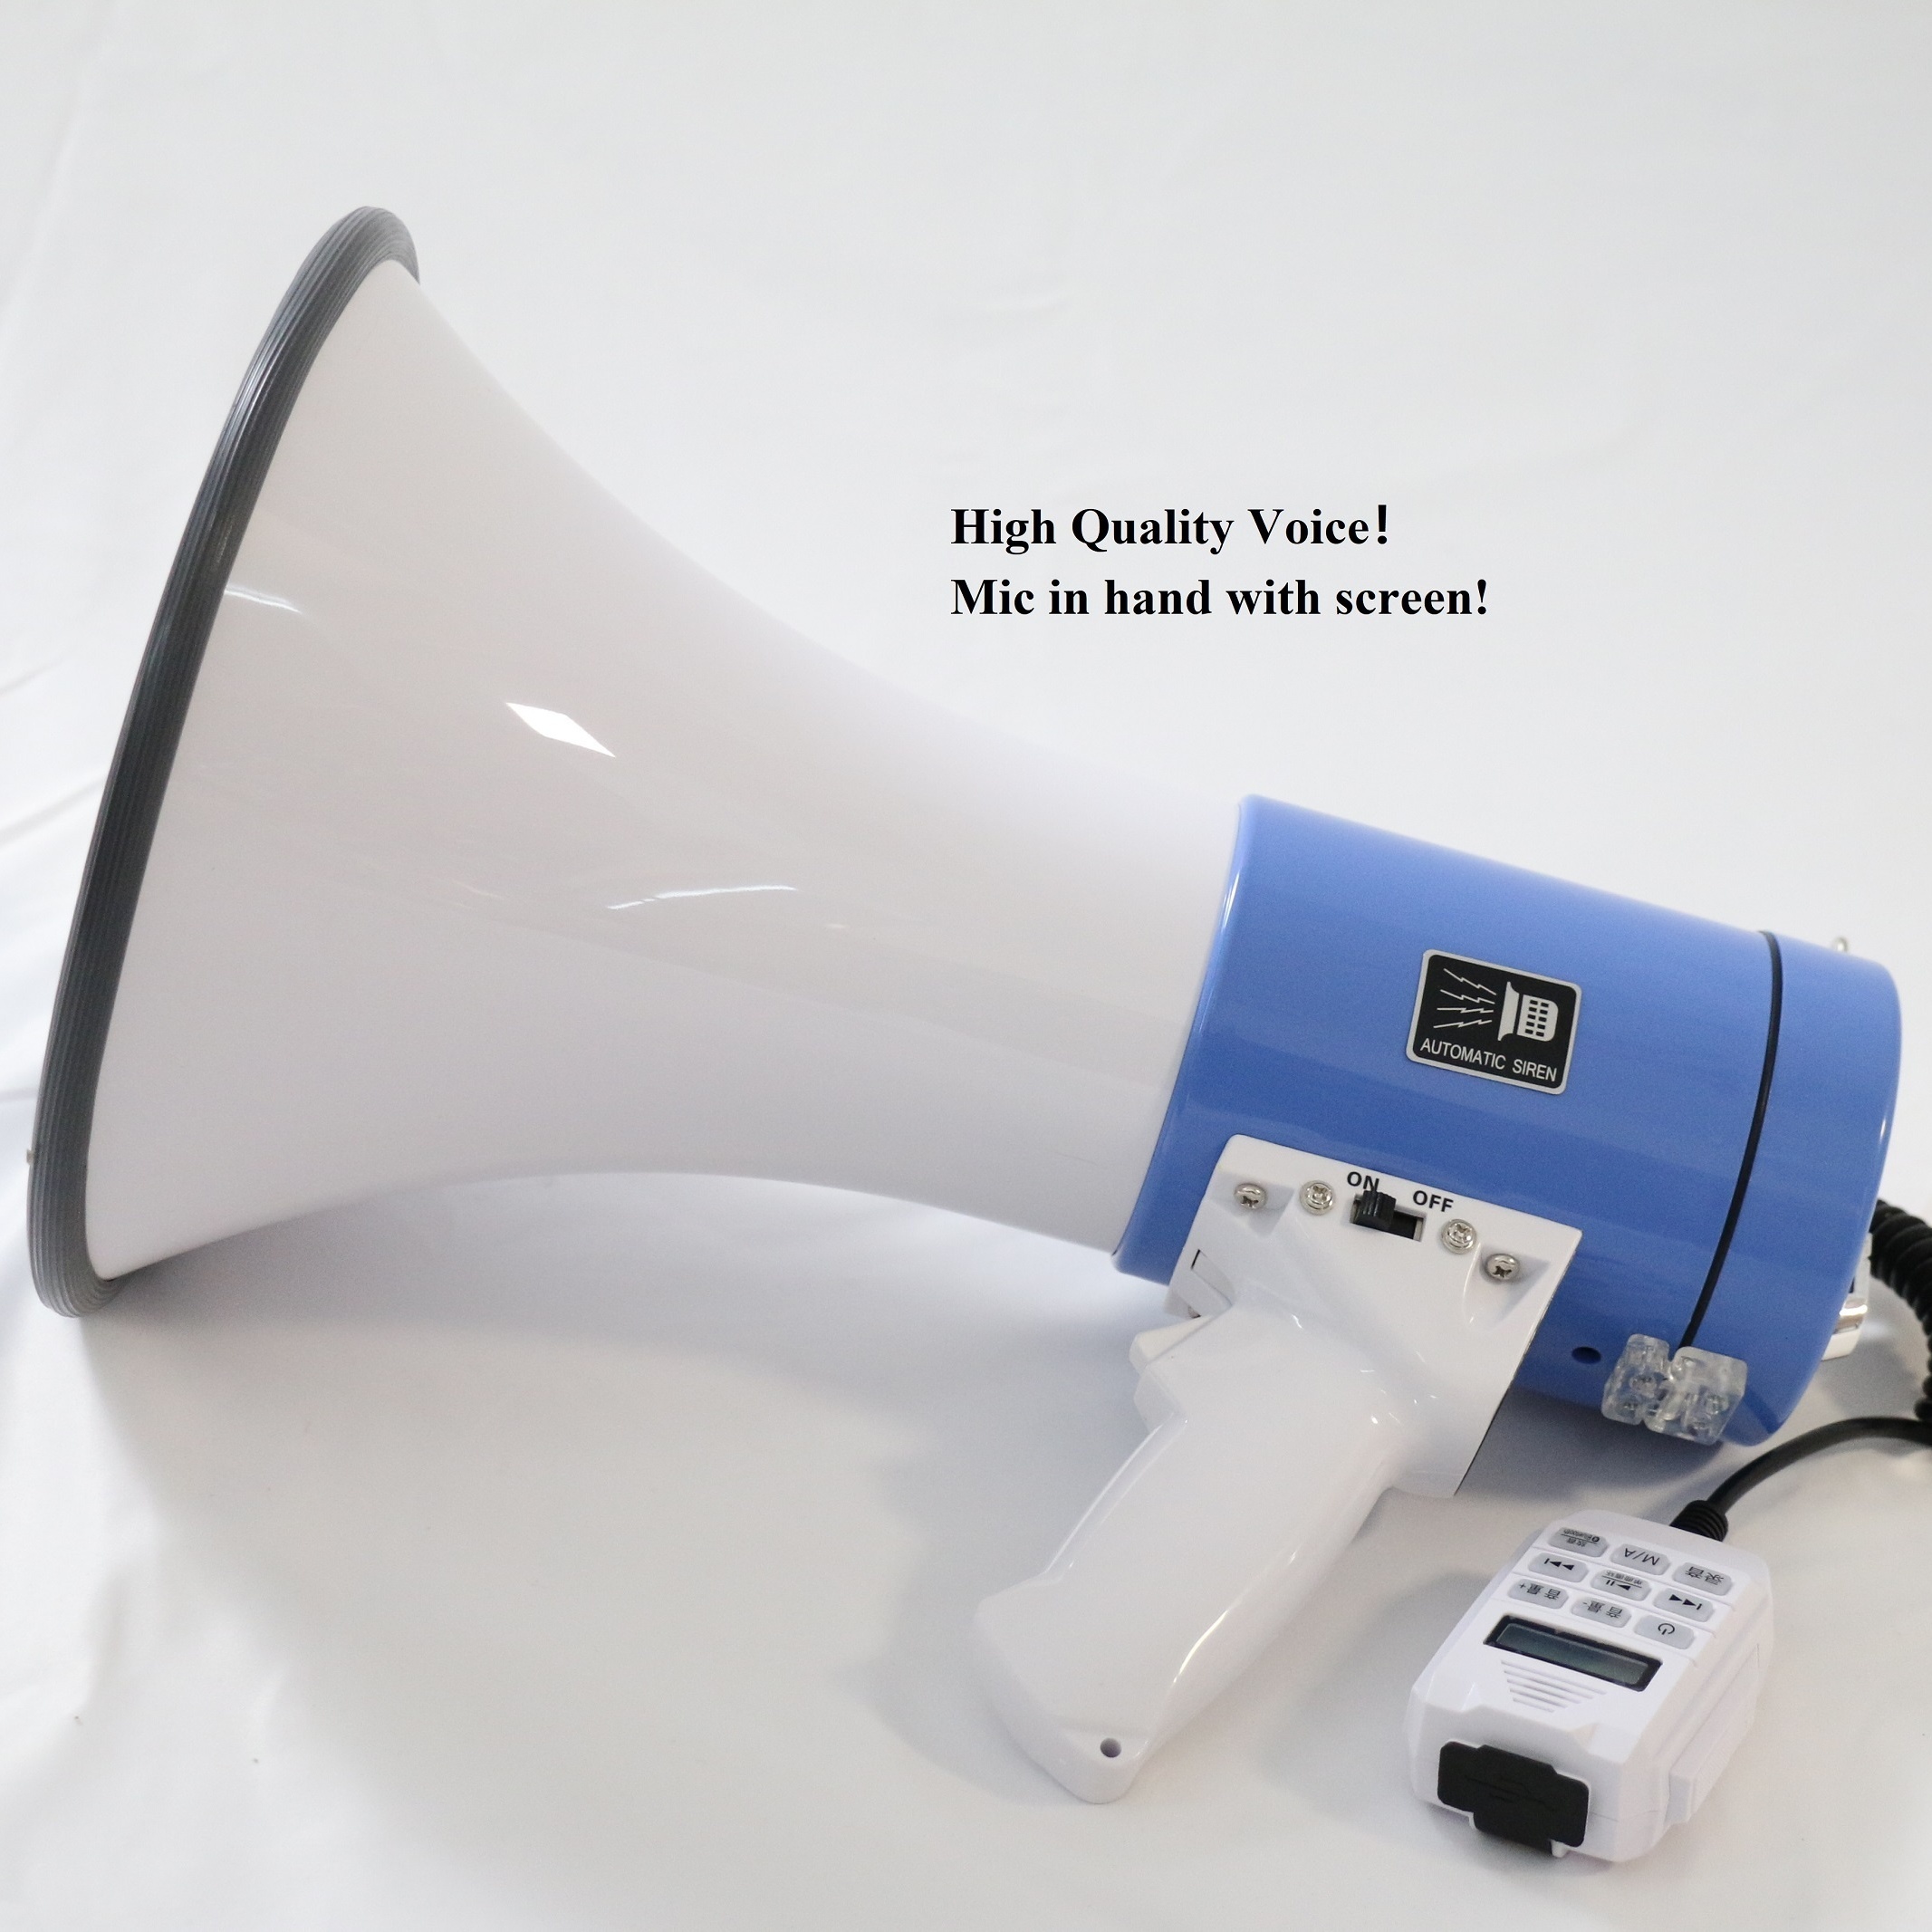 50-Watts professionale Megafono/Bullhorn/Altoparlante con schermo LED Mic  Handheled e registrazione/Connessione wireless/Funzione USB